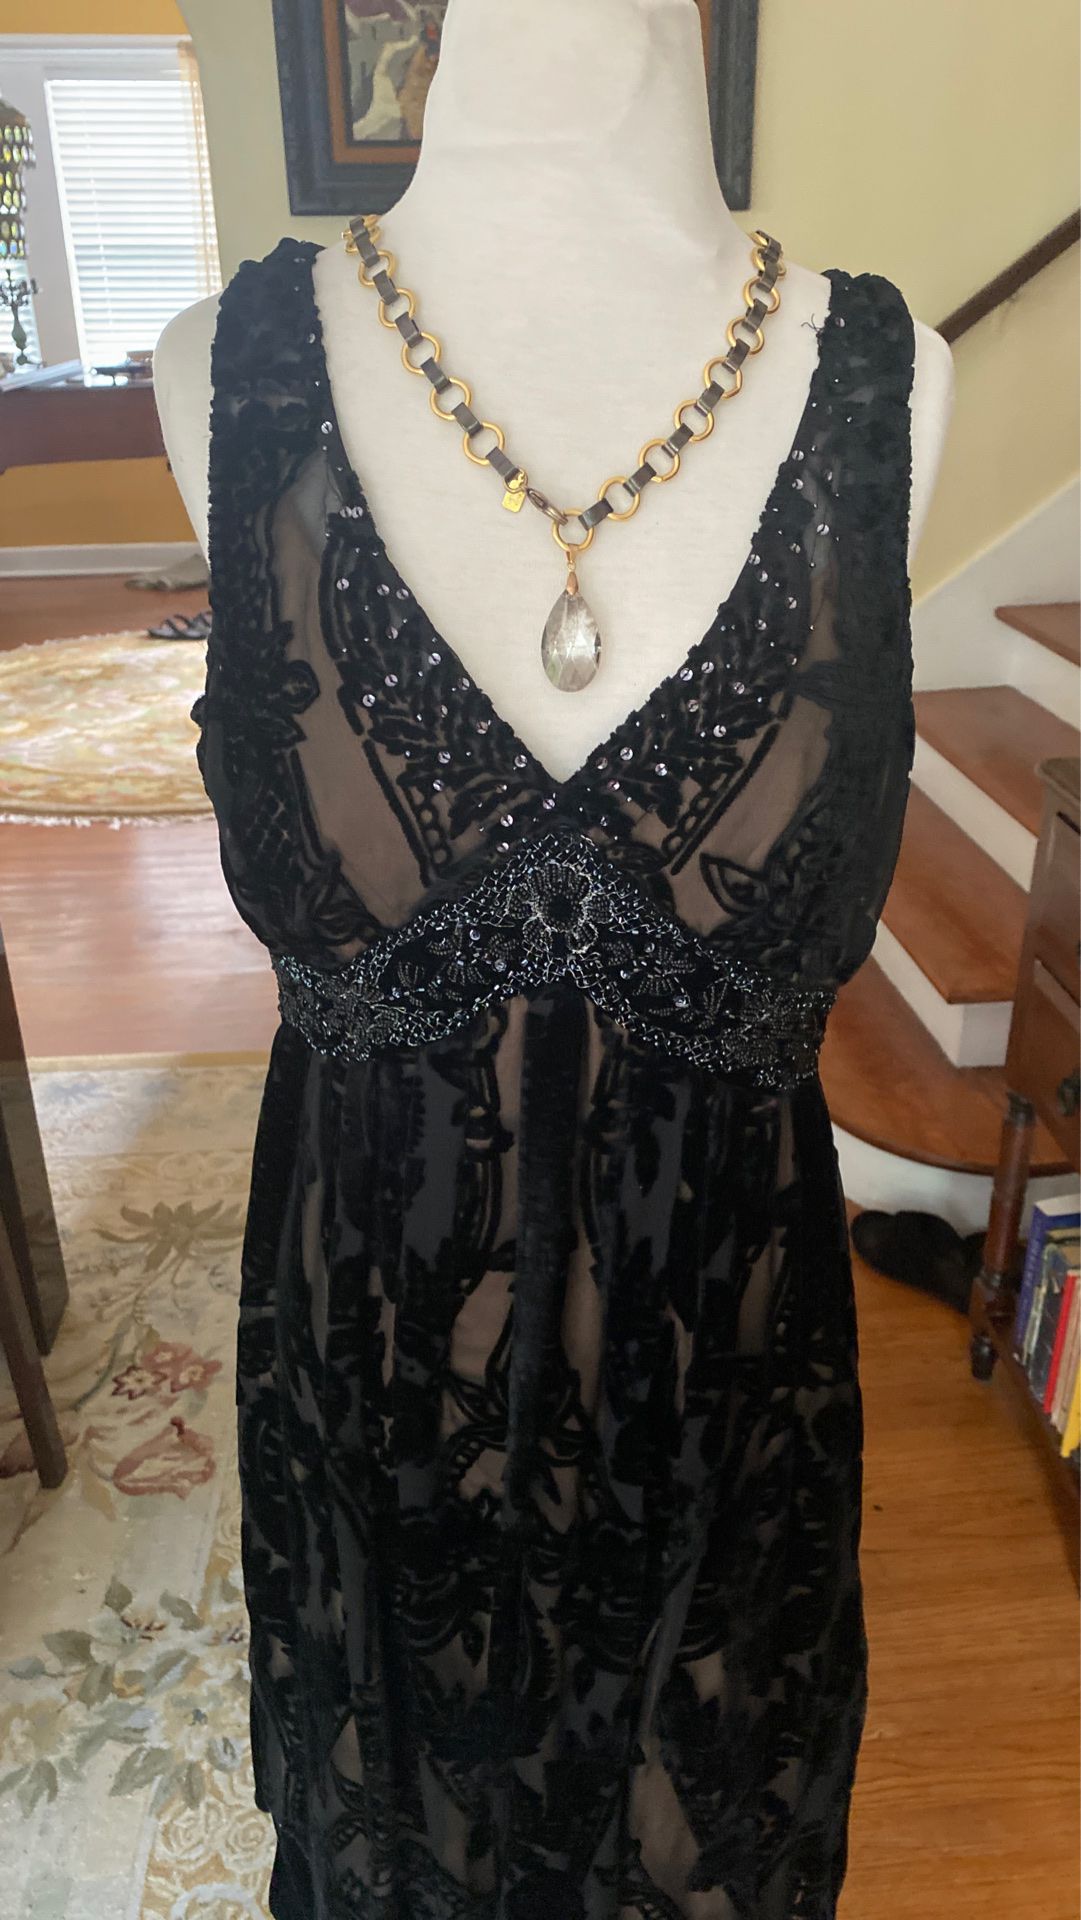 I/e designer black dress V-neck with sequins nearly full length size 12